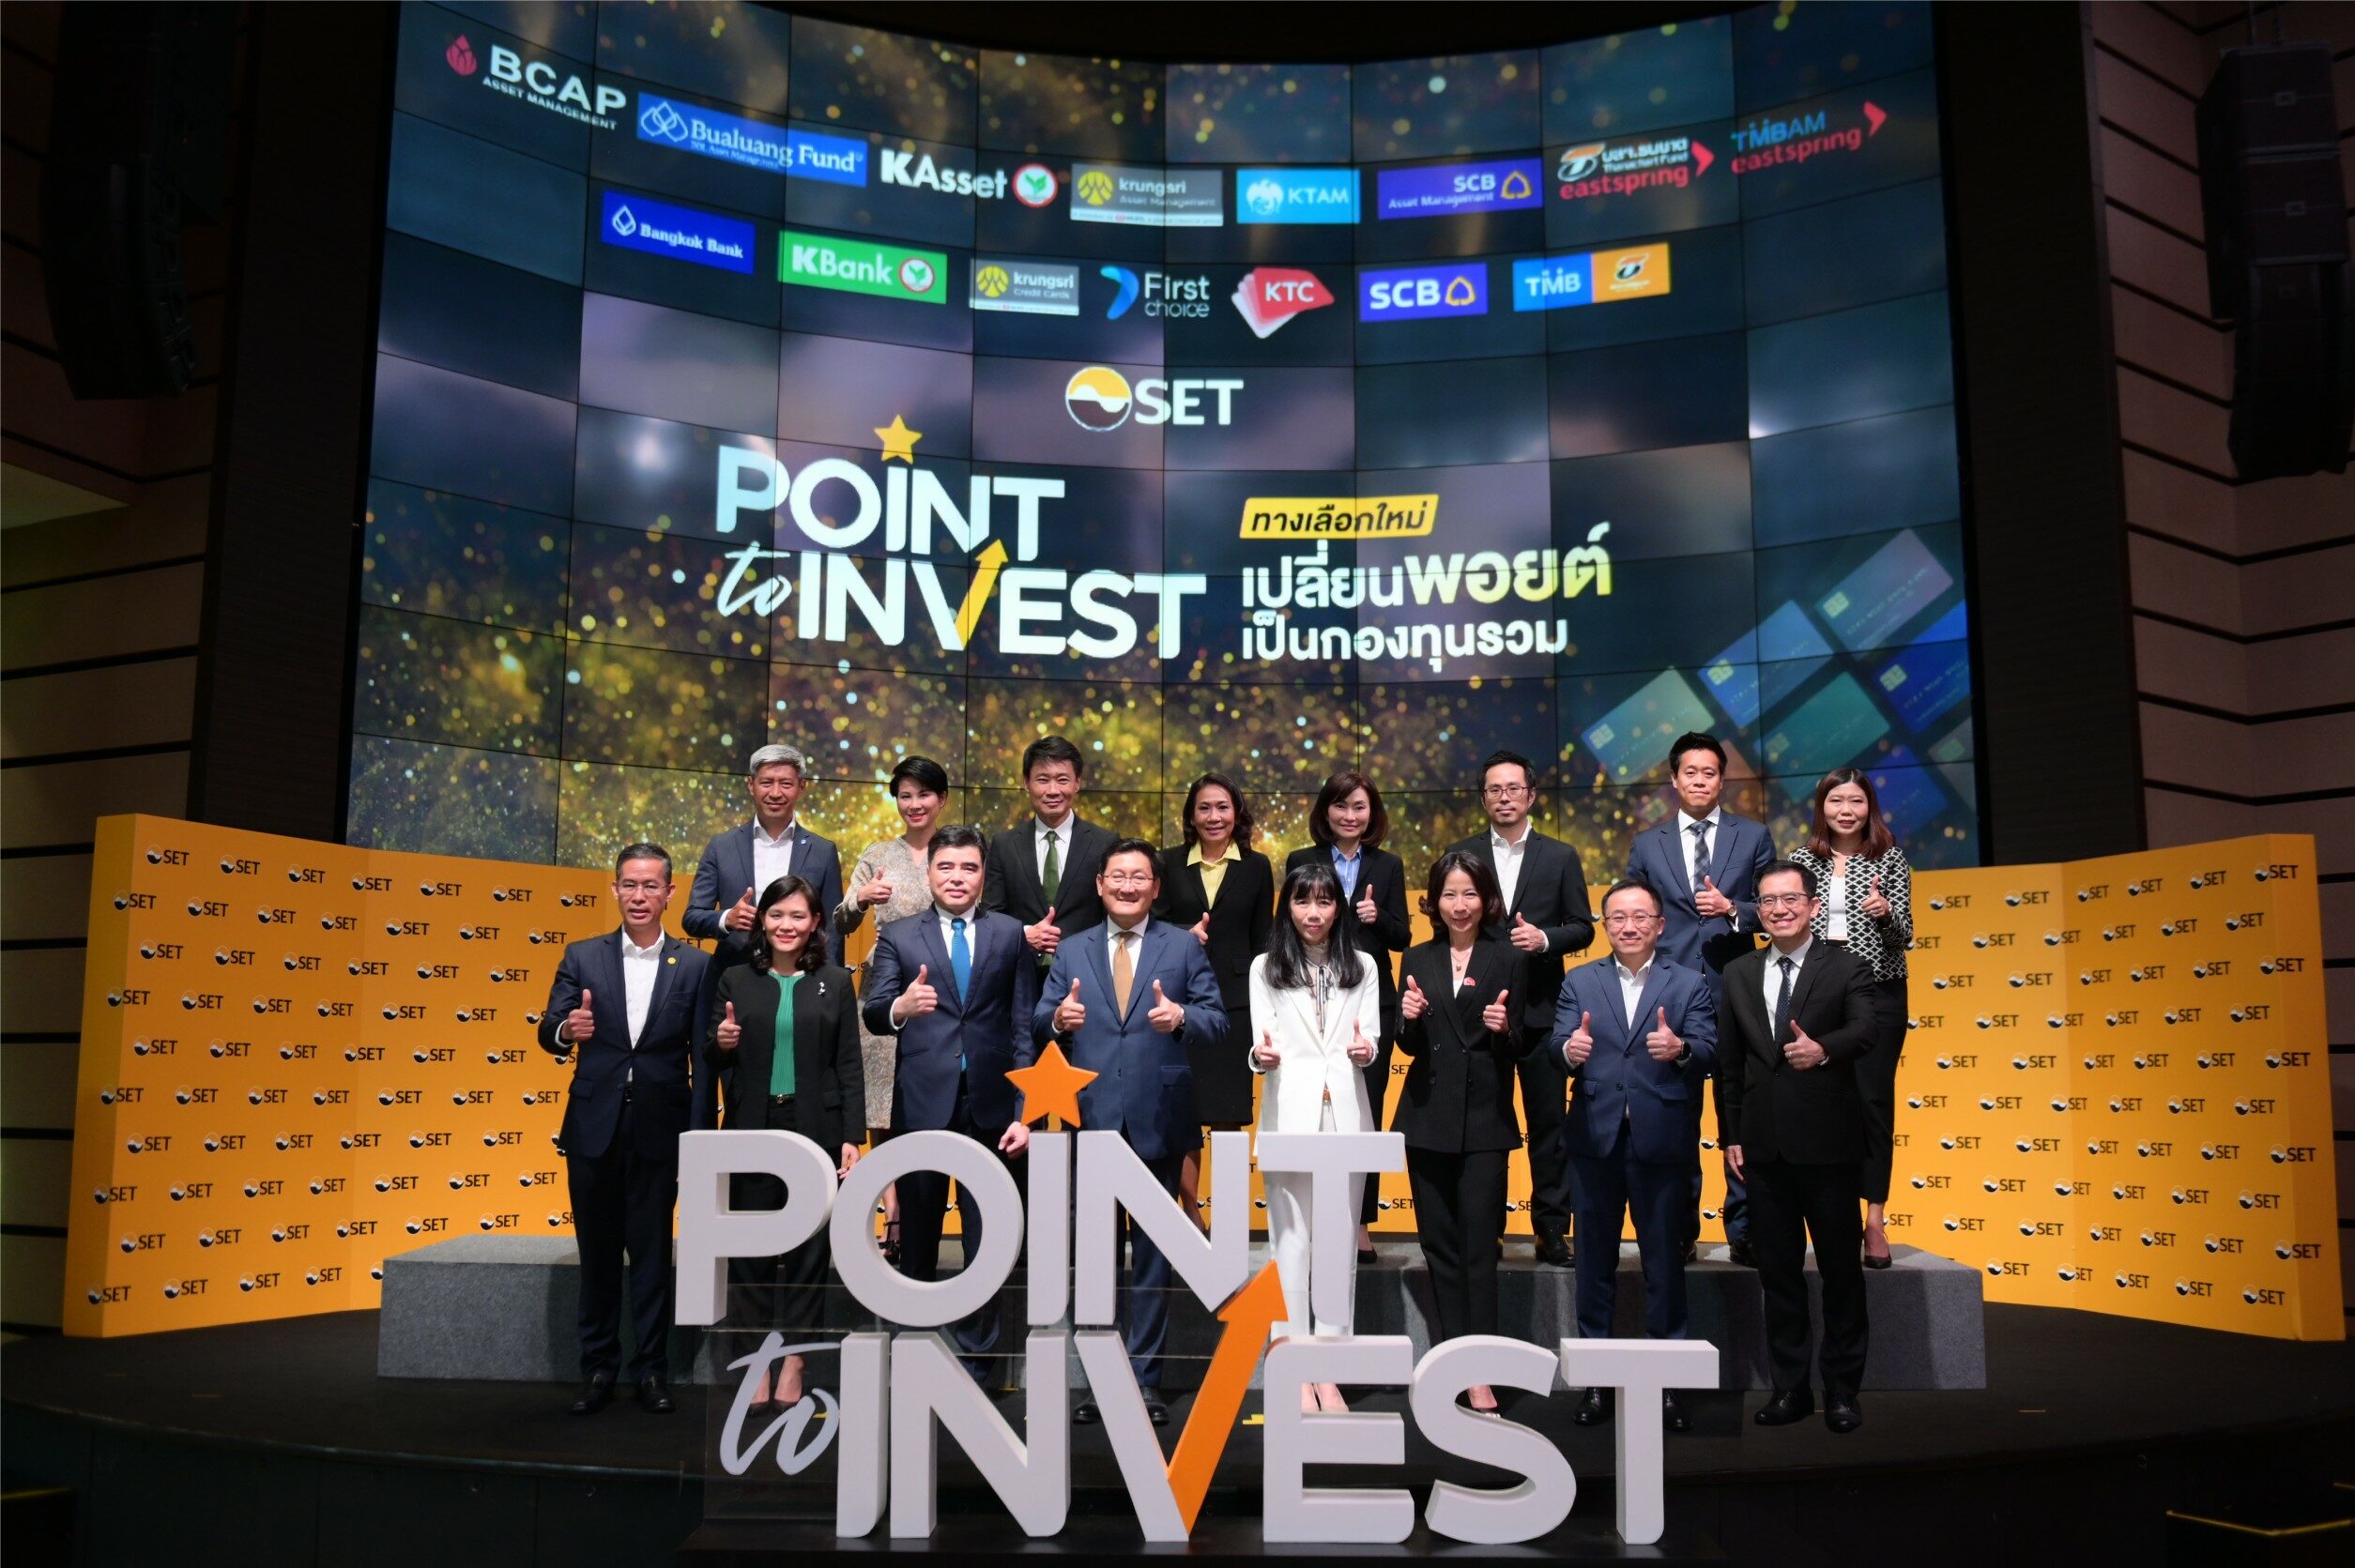 ‘ตลาดหลักทรัพย์ฯ‘ จับมือพันธมิตร เปิดโครงการ “Point to Invest” มิติใหม่เปลี่ยนพอยต์เป็นเงินลงทุน